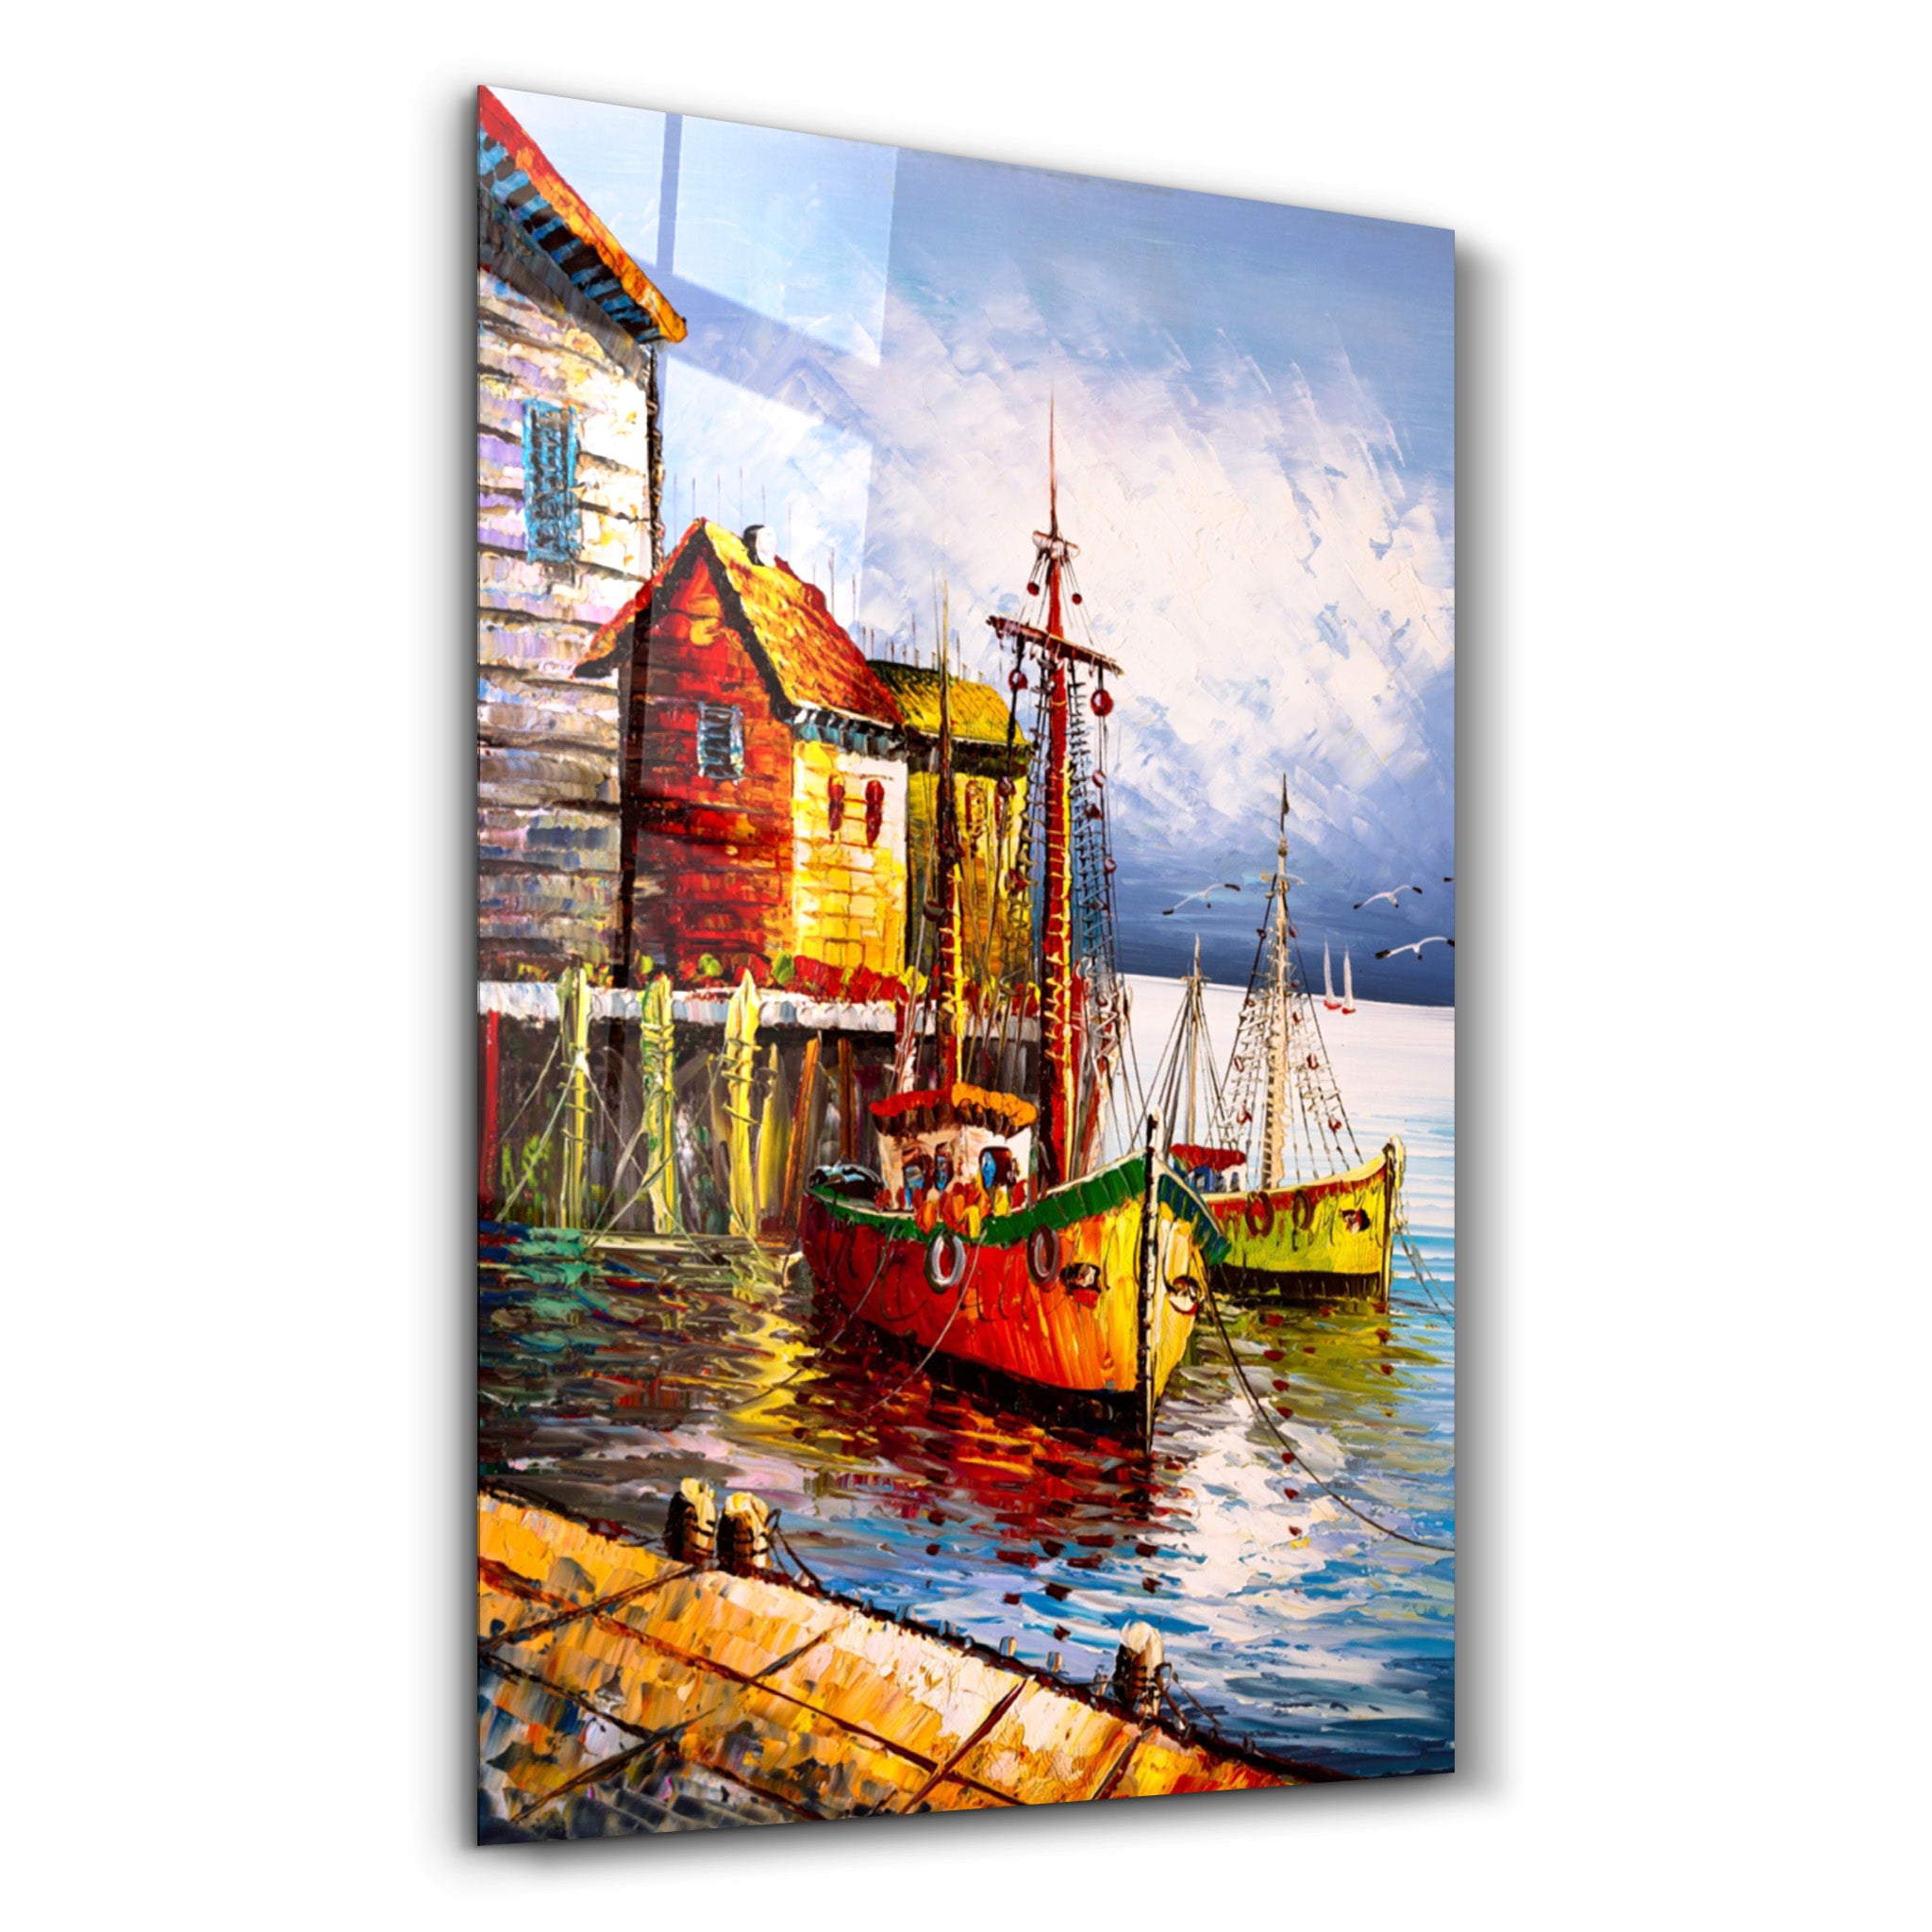 ・"Boats and Houses"・Glass Wall Art - ArtDesigna Glass Printing Wall Art